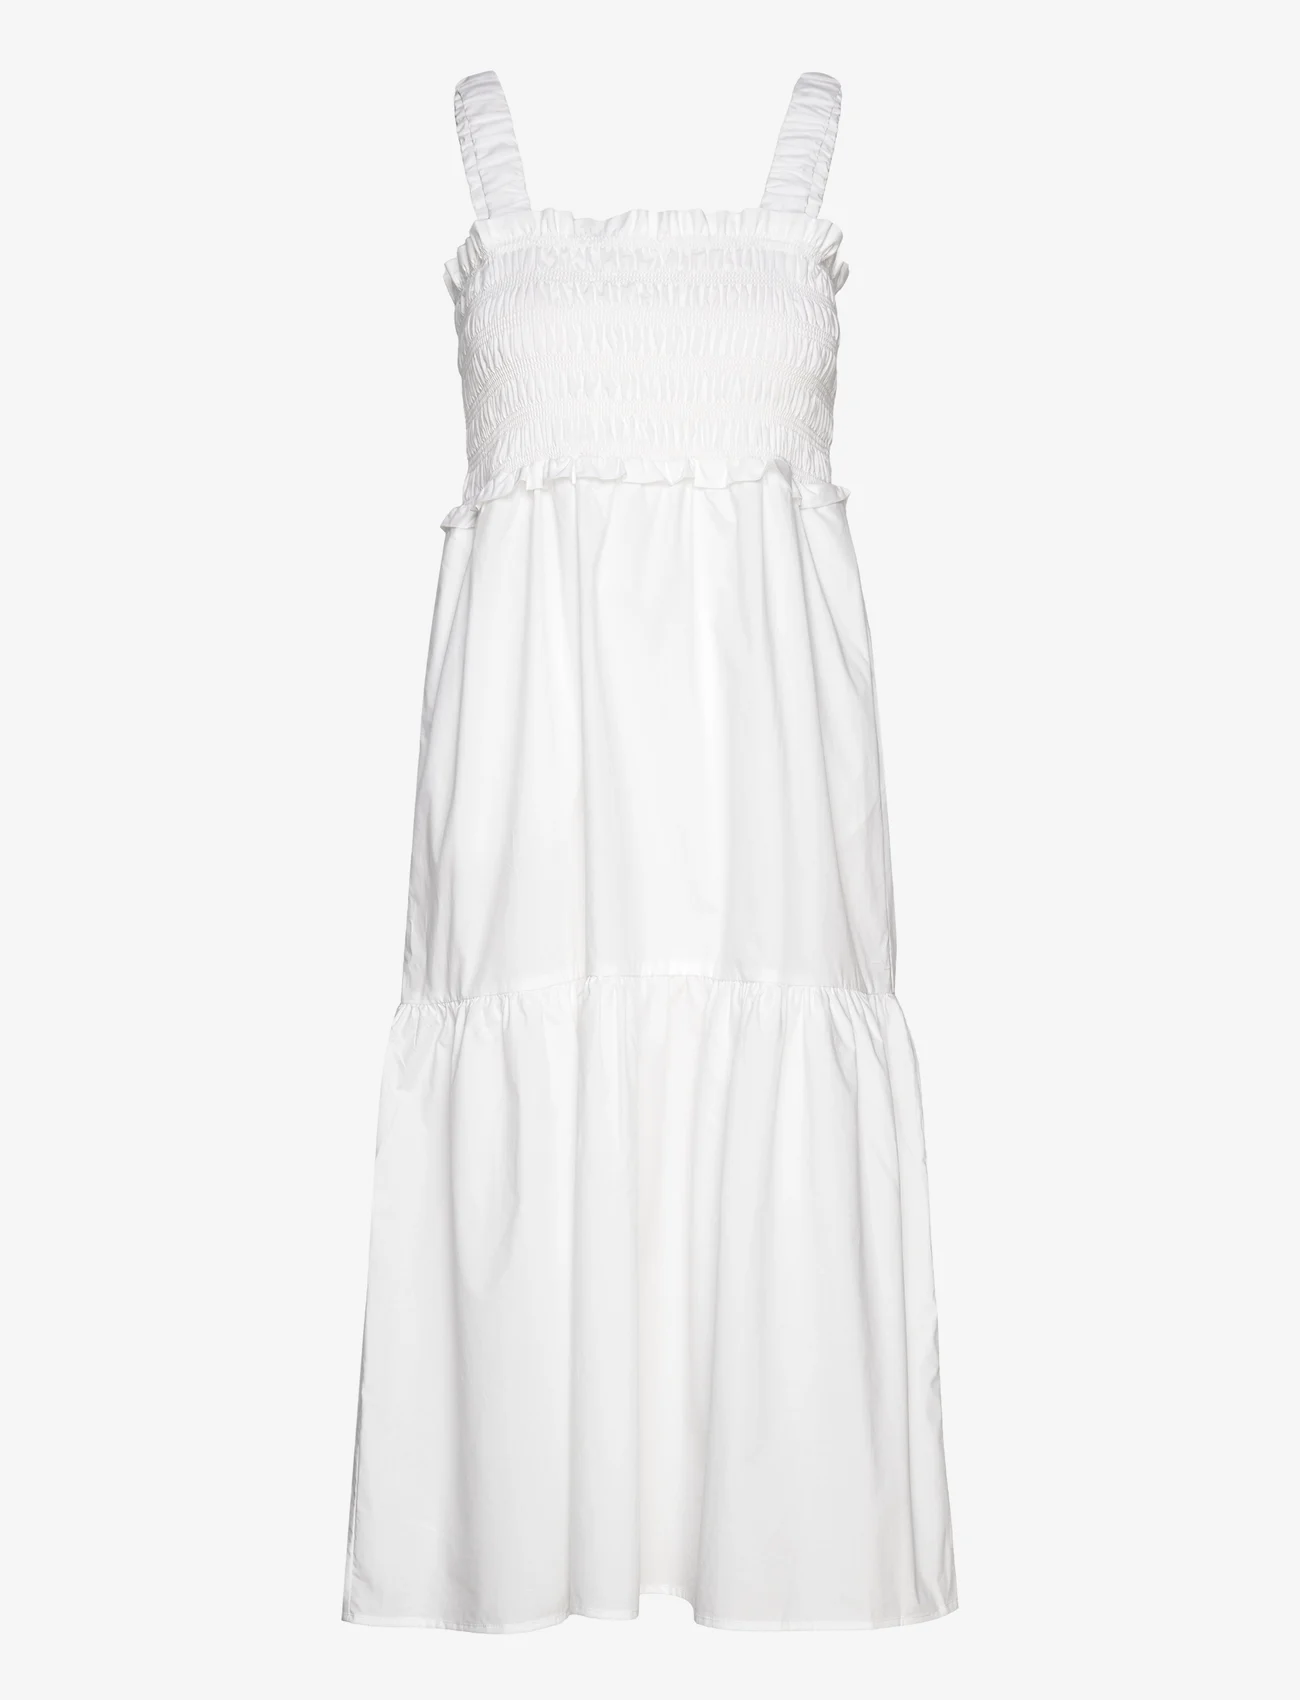 Levete Room - LR-BRADIE - summer dresses - l100 - white - 0